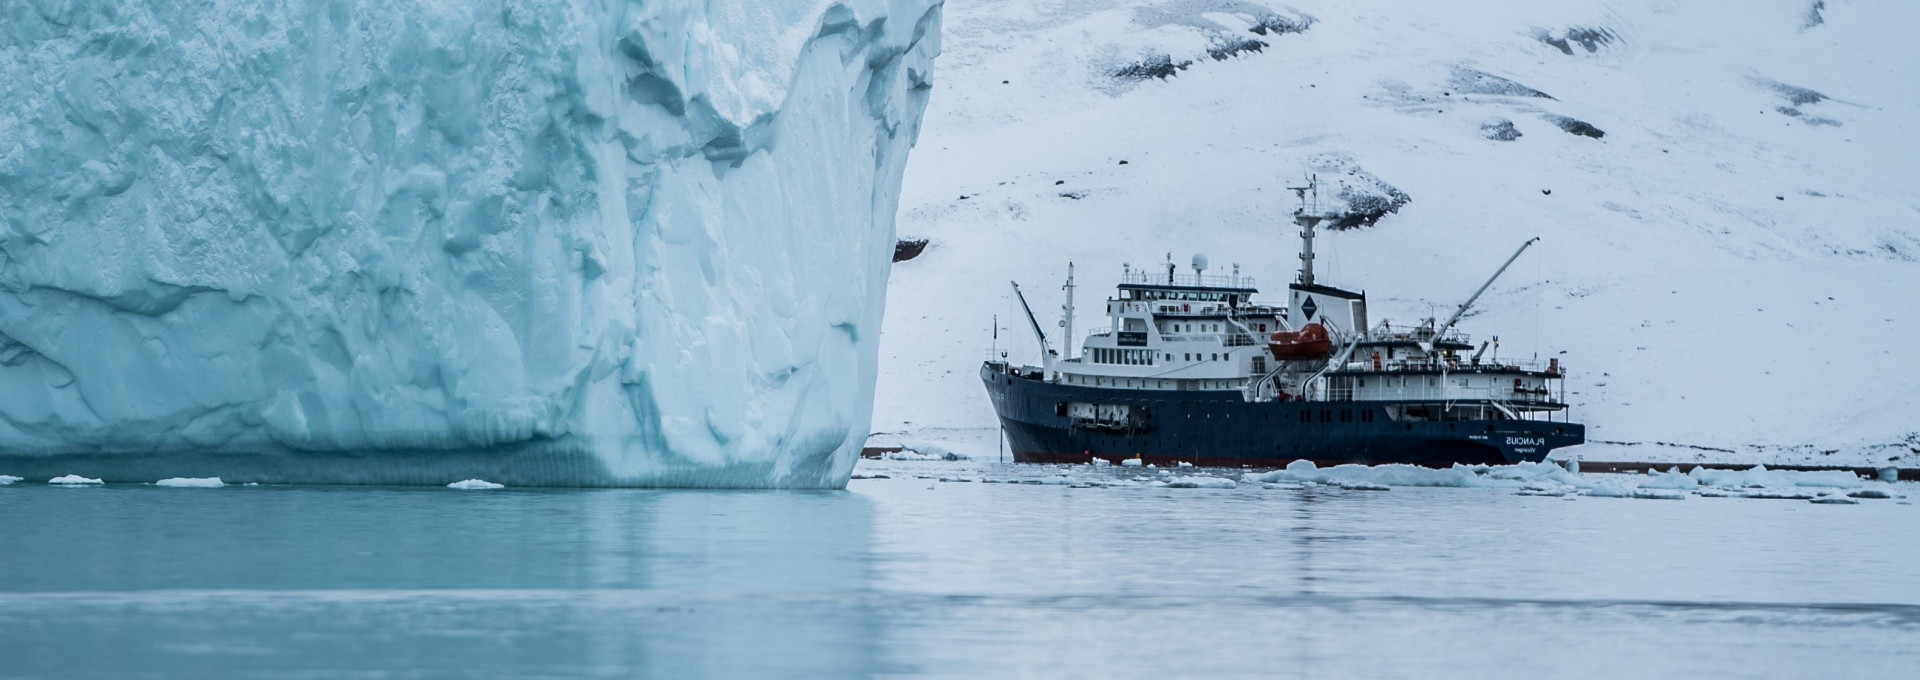 Foschungsschiff zwischen Eisbergen